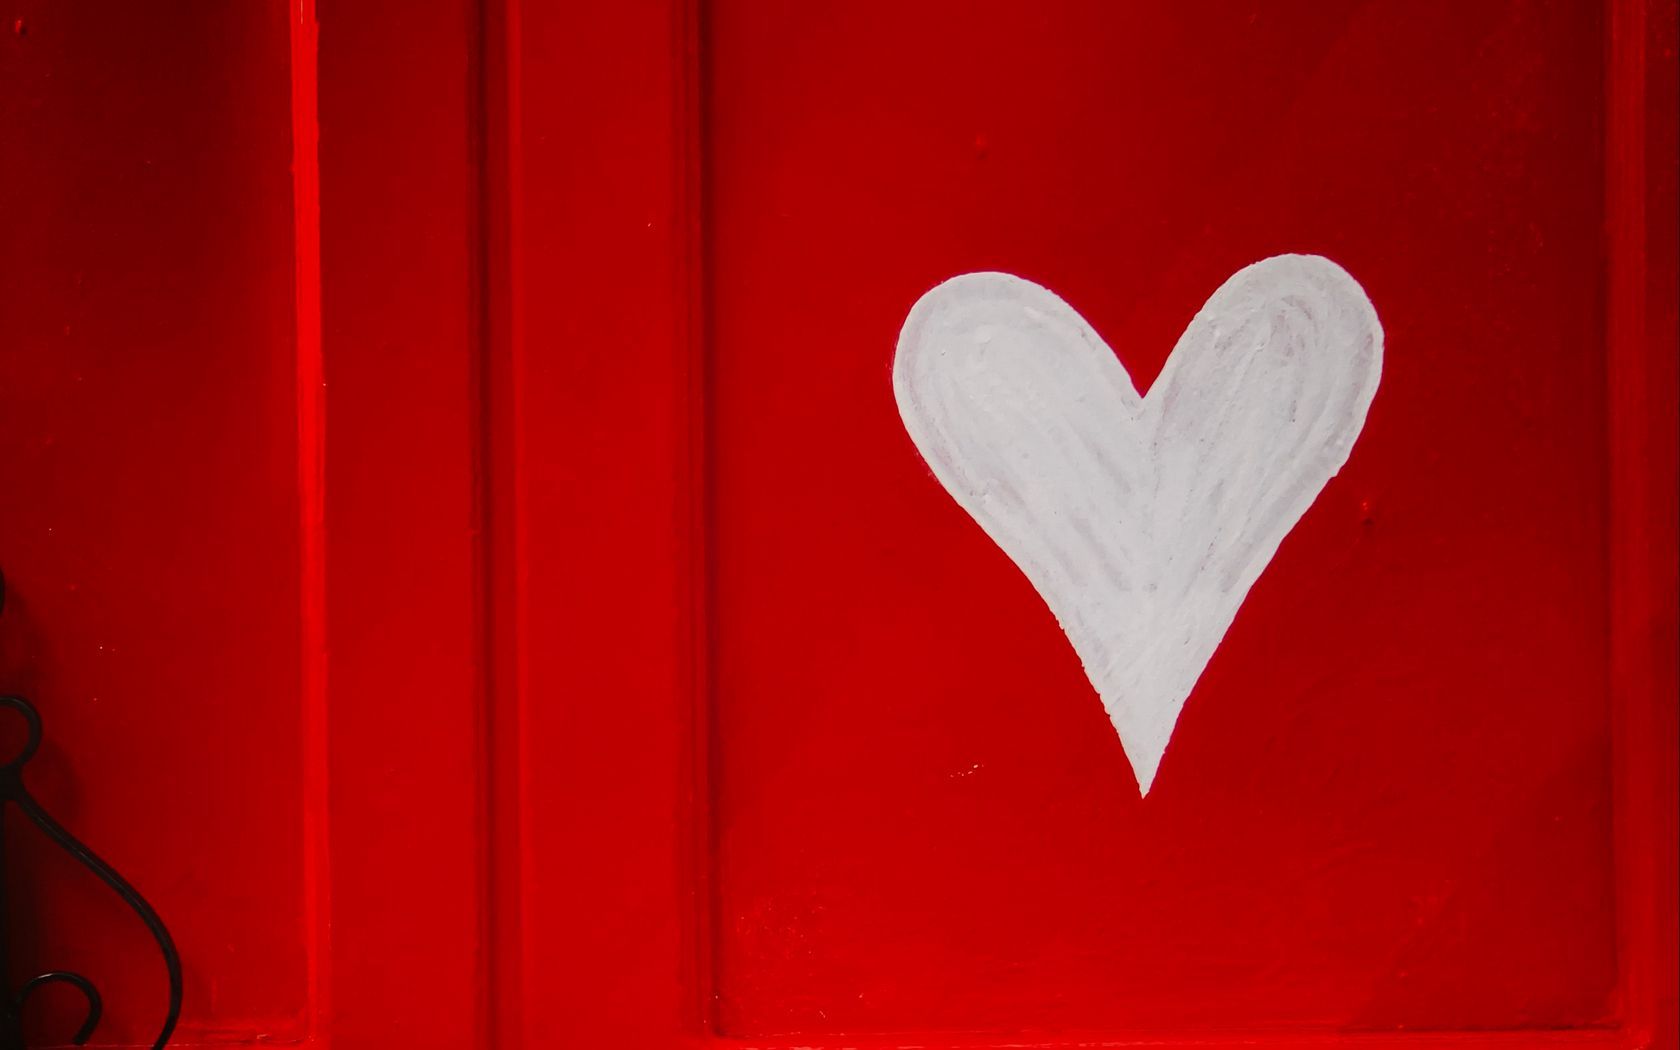 Download wallpaper 1680x1050 heart, love, romance, red, door widescreen 16:10 HD background